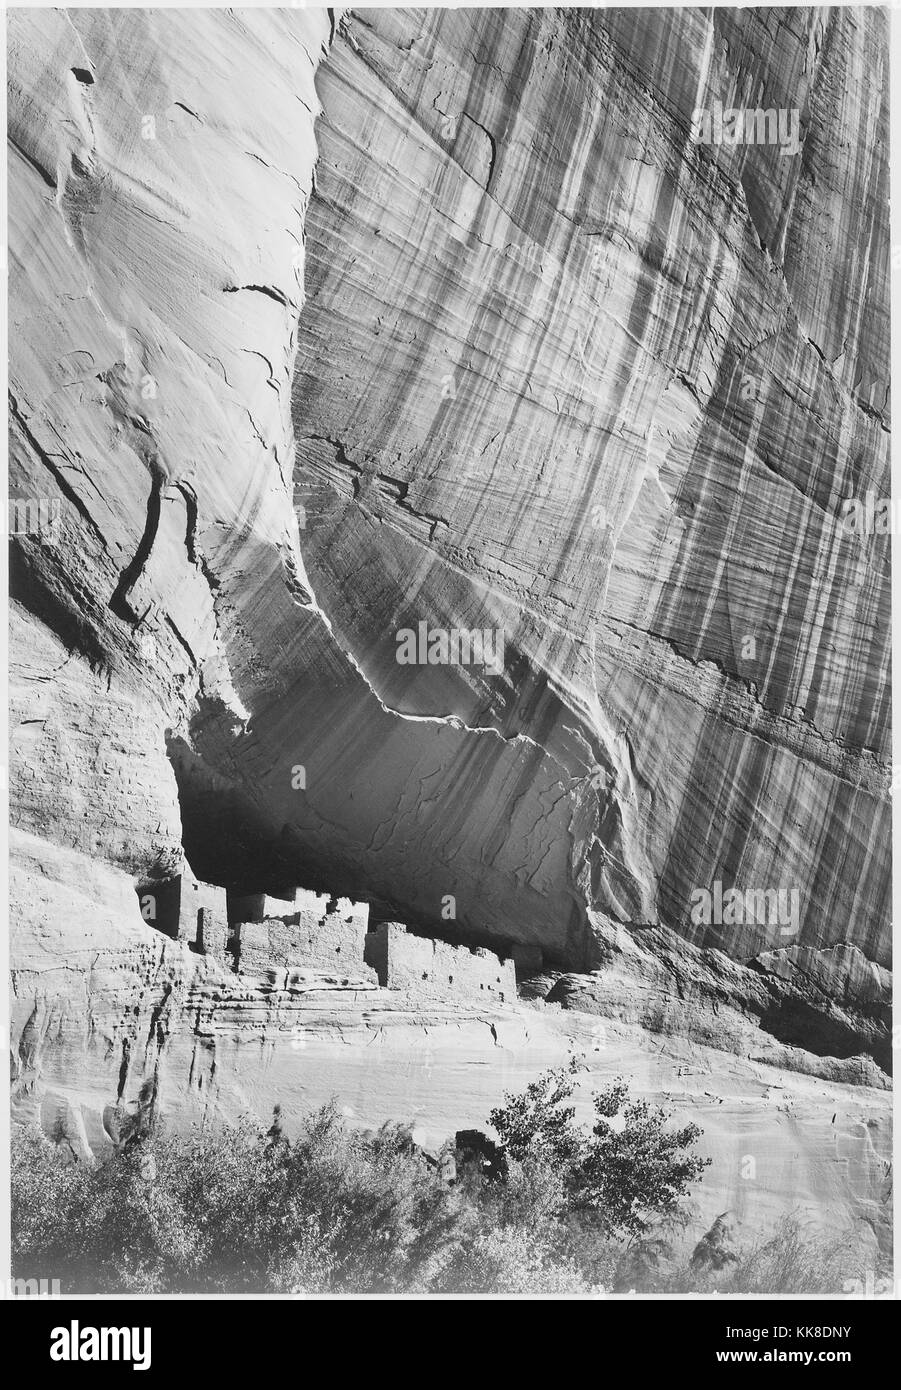 Ein schwarz-weiß Foto einer Siedlung am Fuße einer Klippe in Canyon de Chelly National Monument geschaffen, die Gegend ist eine der ältesten ununterbrochen bewohnten Gebiete in Nordamerika, es wird von den Navajo Tribal Vertrauen der Navajo Nation und wird in Zusammenarbeit mit dem National Park Service verwaltet, das Bild stammt aus einer Serie von Fotografien bekannt als das Wandbild Projekt von Ansel Adams, er durch den National Park Service 1941 beauftragt wurde, eine fotografische Wandbild für das Ministerium des Innern in Washington DC zu erstellen, wird das Projekt zu einem Ende kam wegen des Zweiten Weltkrieges, Stockfoto